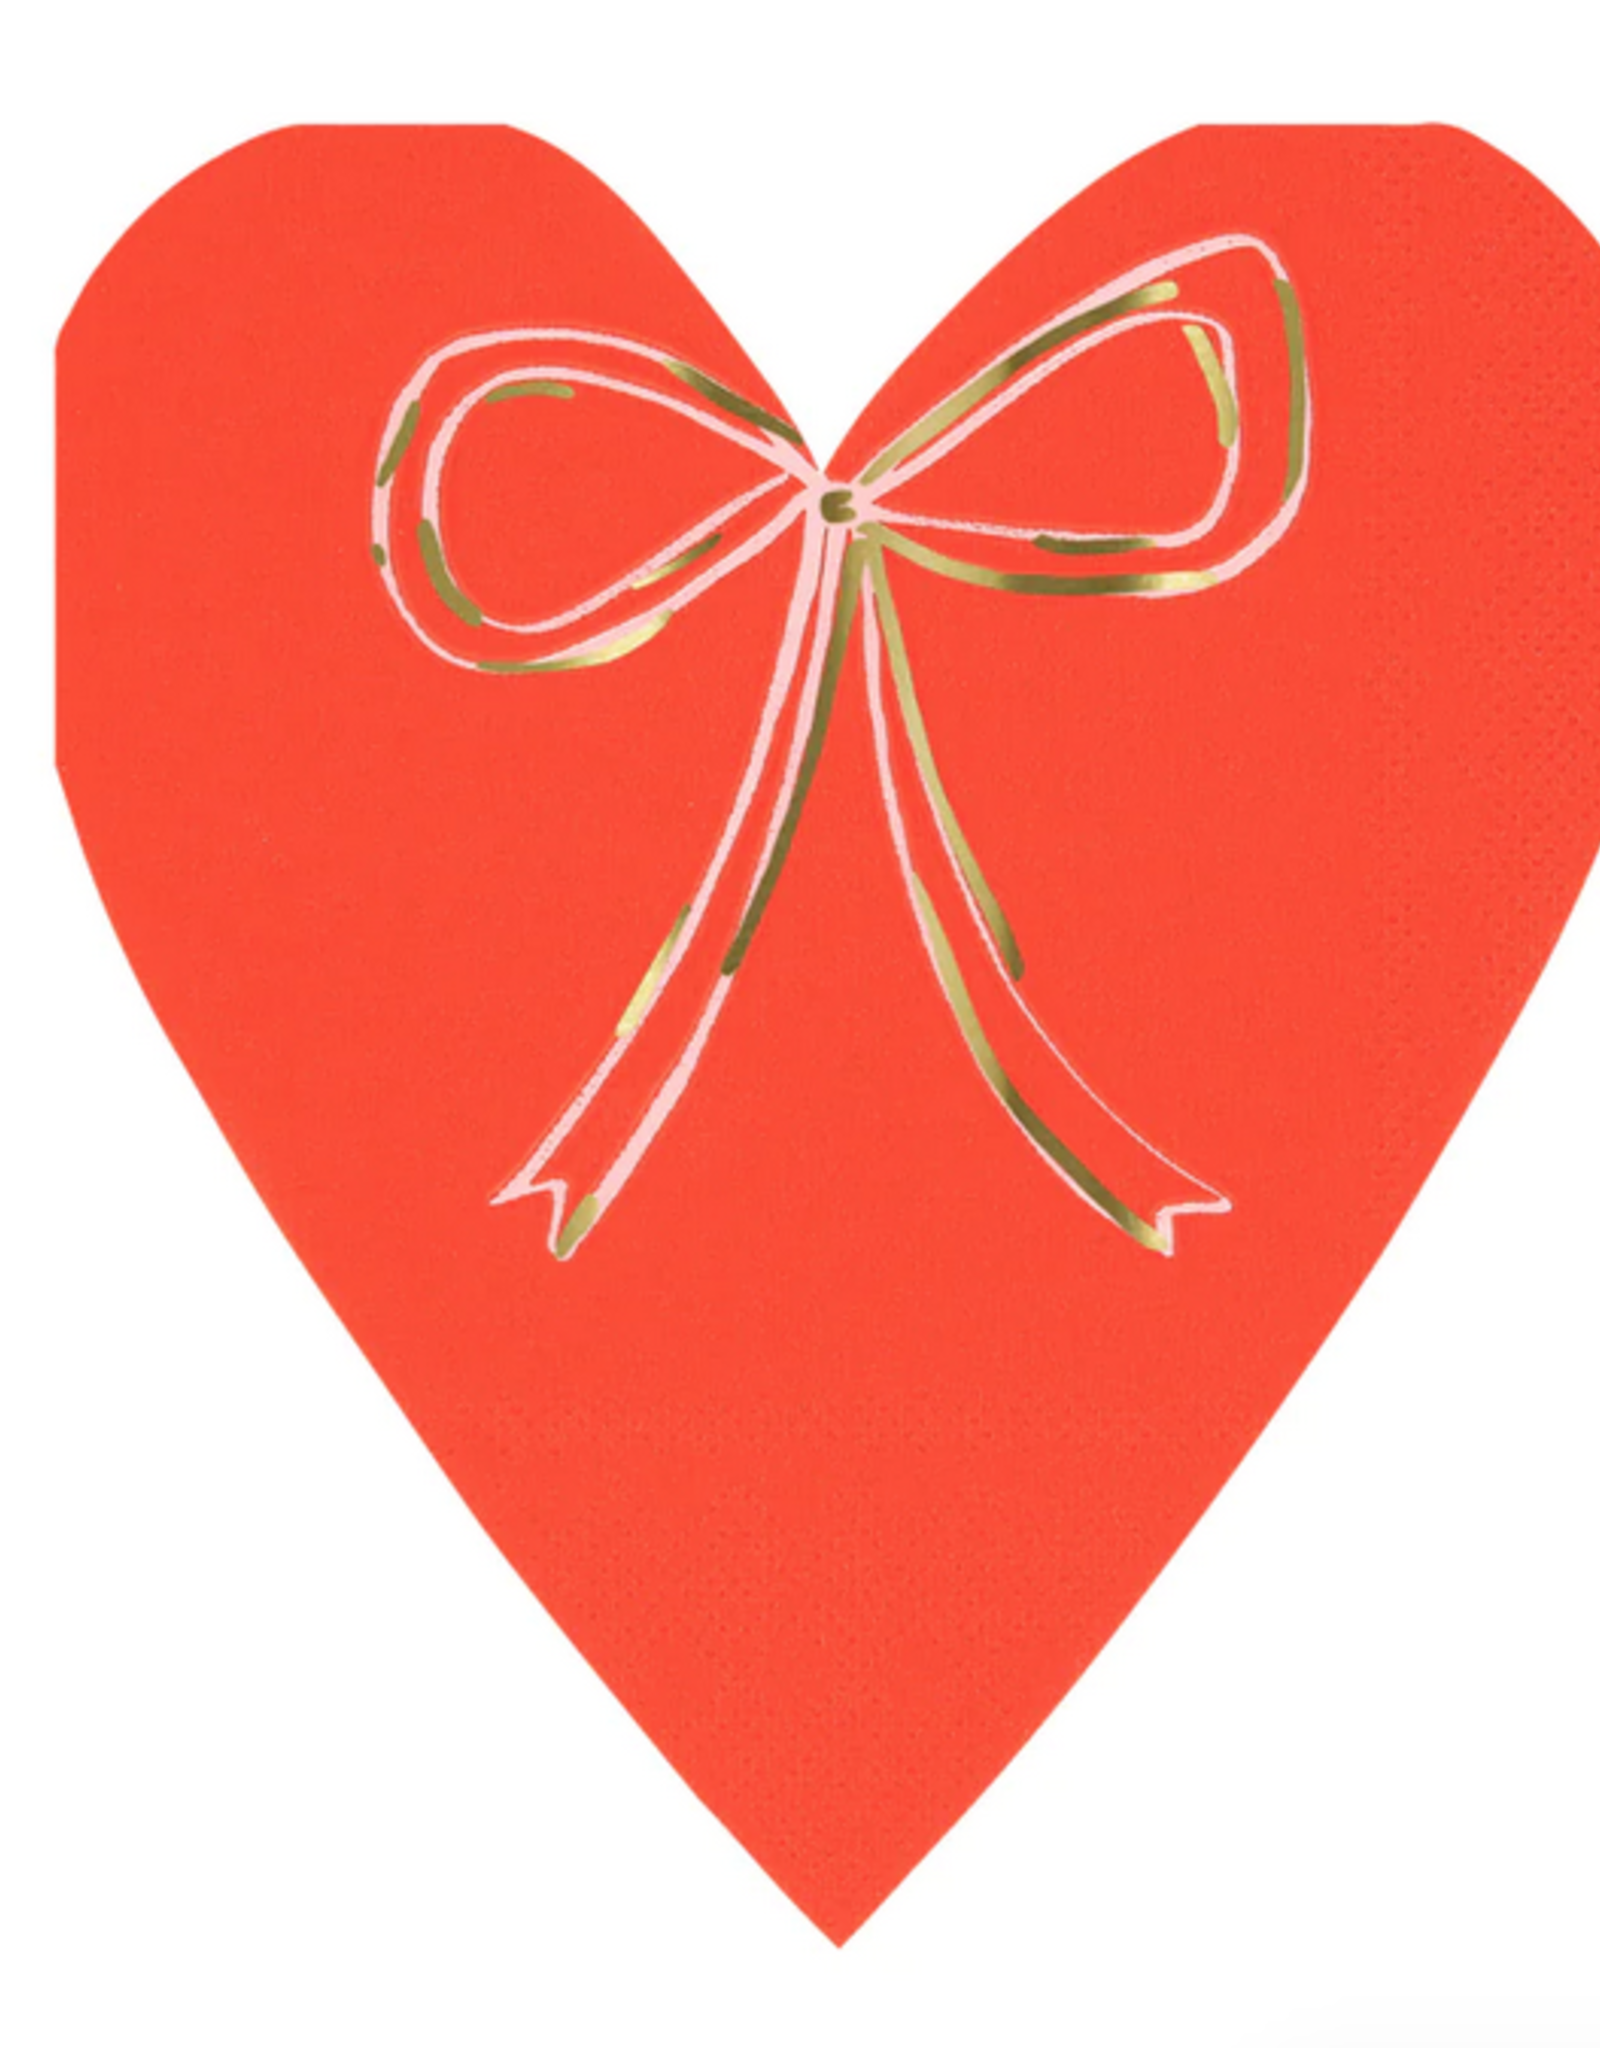 Meri Meri heart with bow napkins